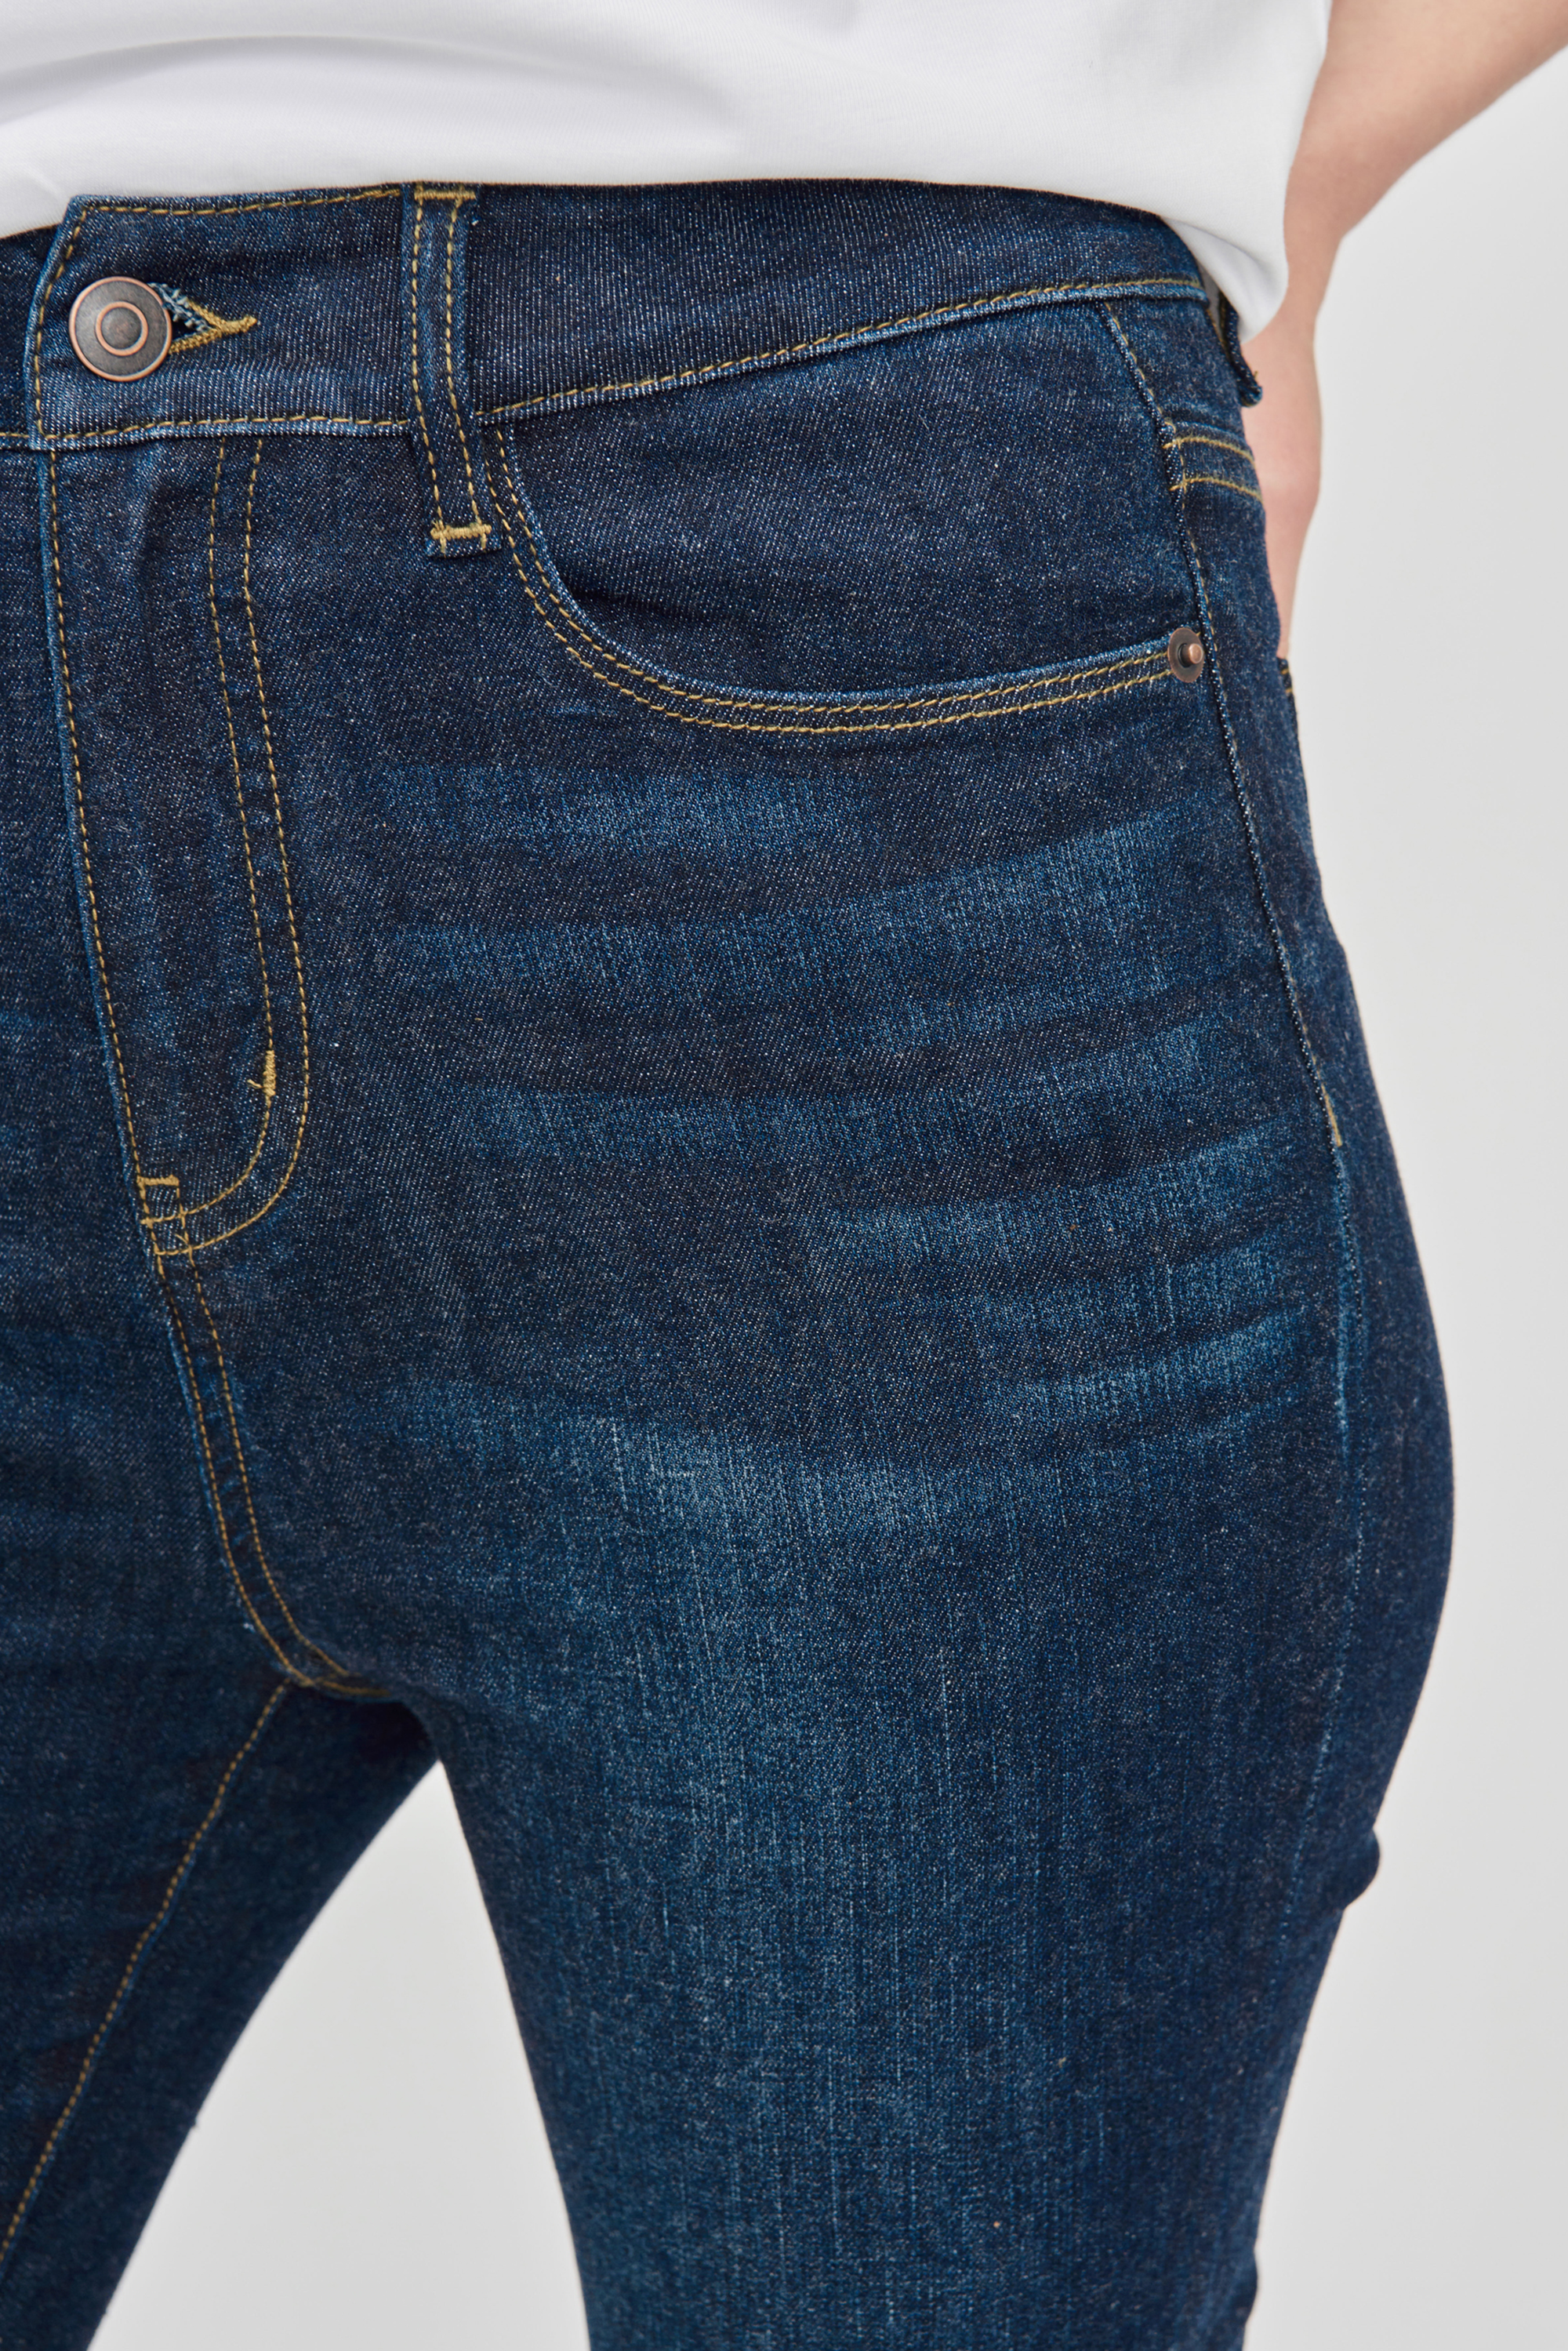 LENNY high-waited boot-cut jeans (Blue)